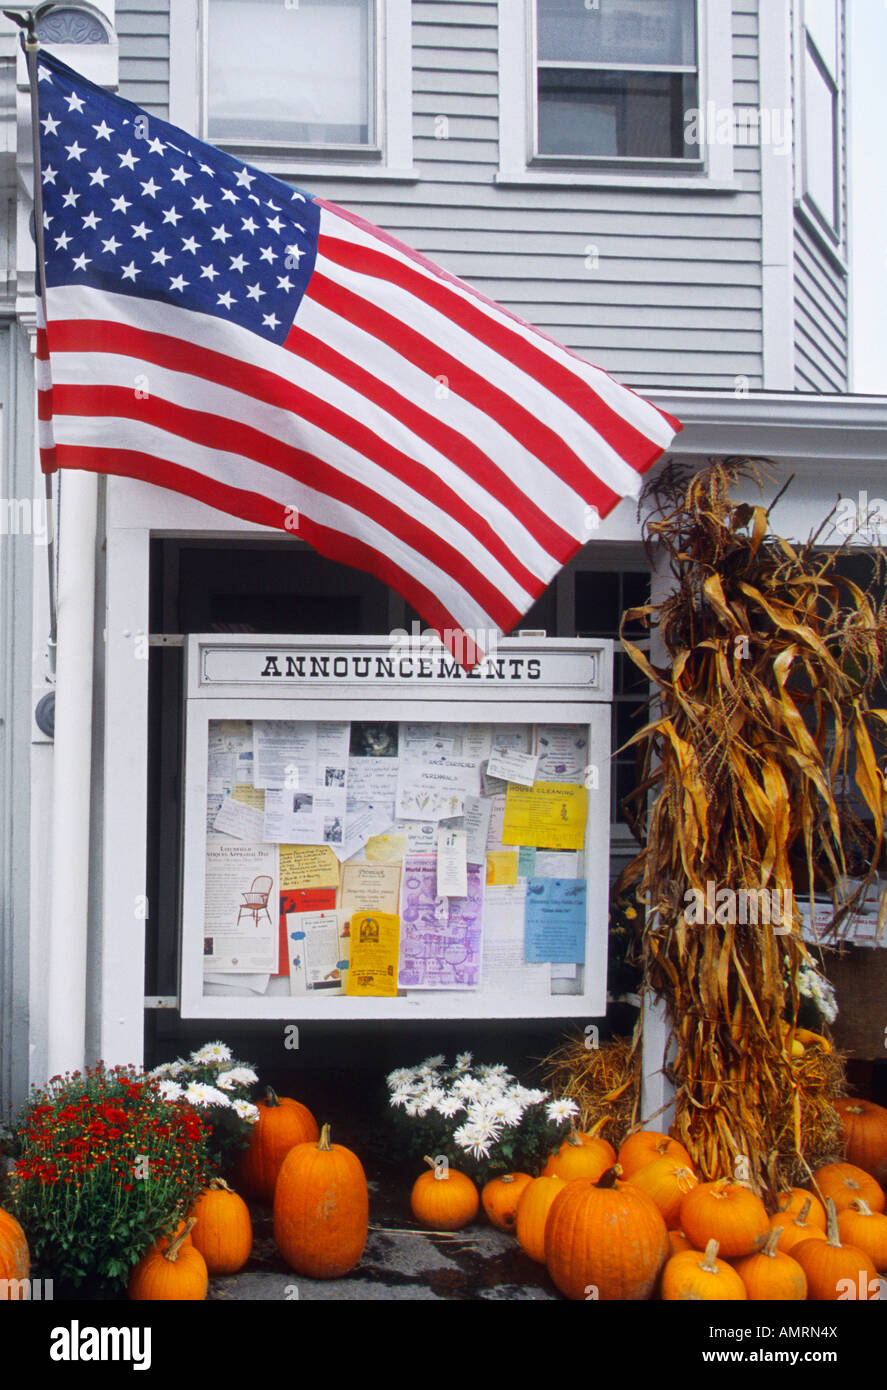 Petit magasin de pays des États-Unis, Nouvelle-Angleterre, drapeau américain et récolte d'automne.Maison en tableau blanc, citrouilles, panneau d'annonce, balles de maïs.Personne Banque D'Images